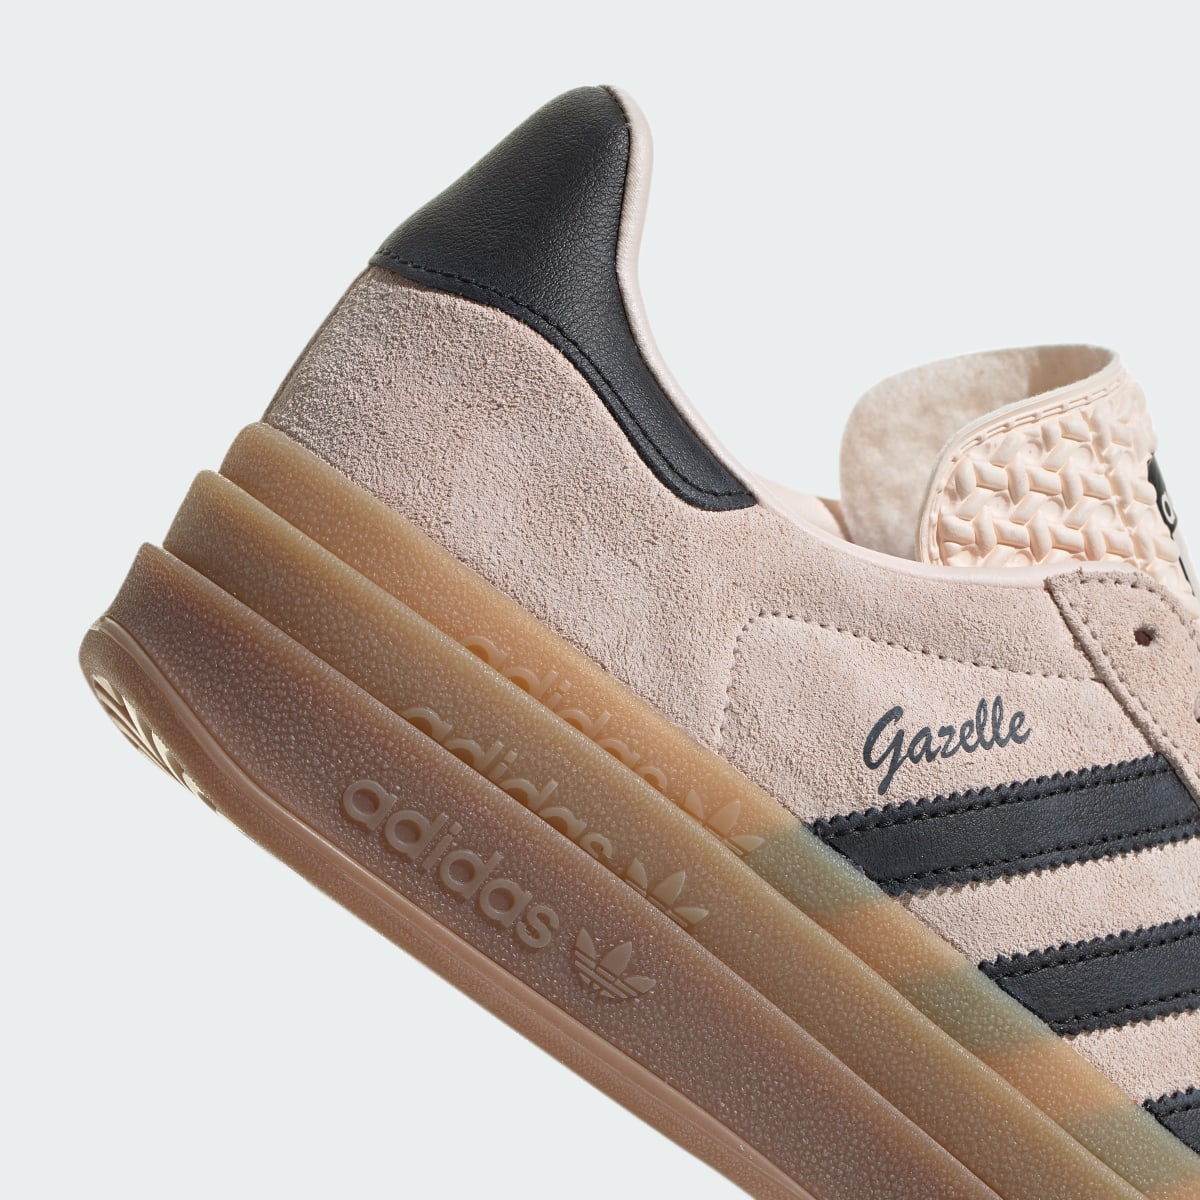 Adidas Gazelle Bold Shoes. 9